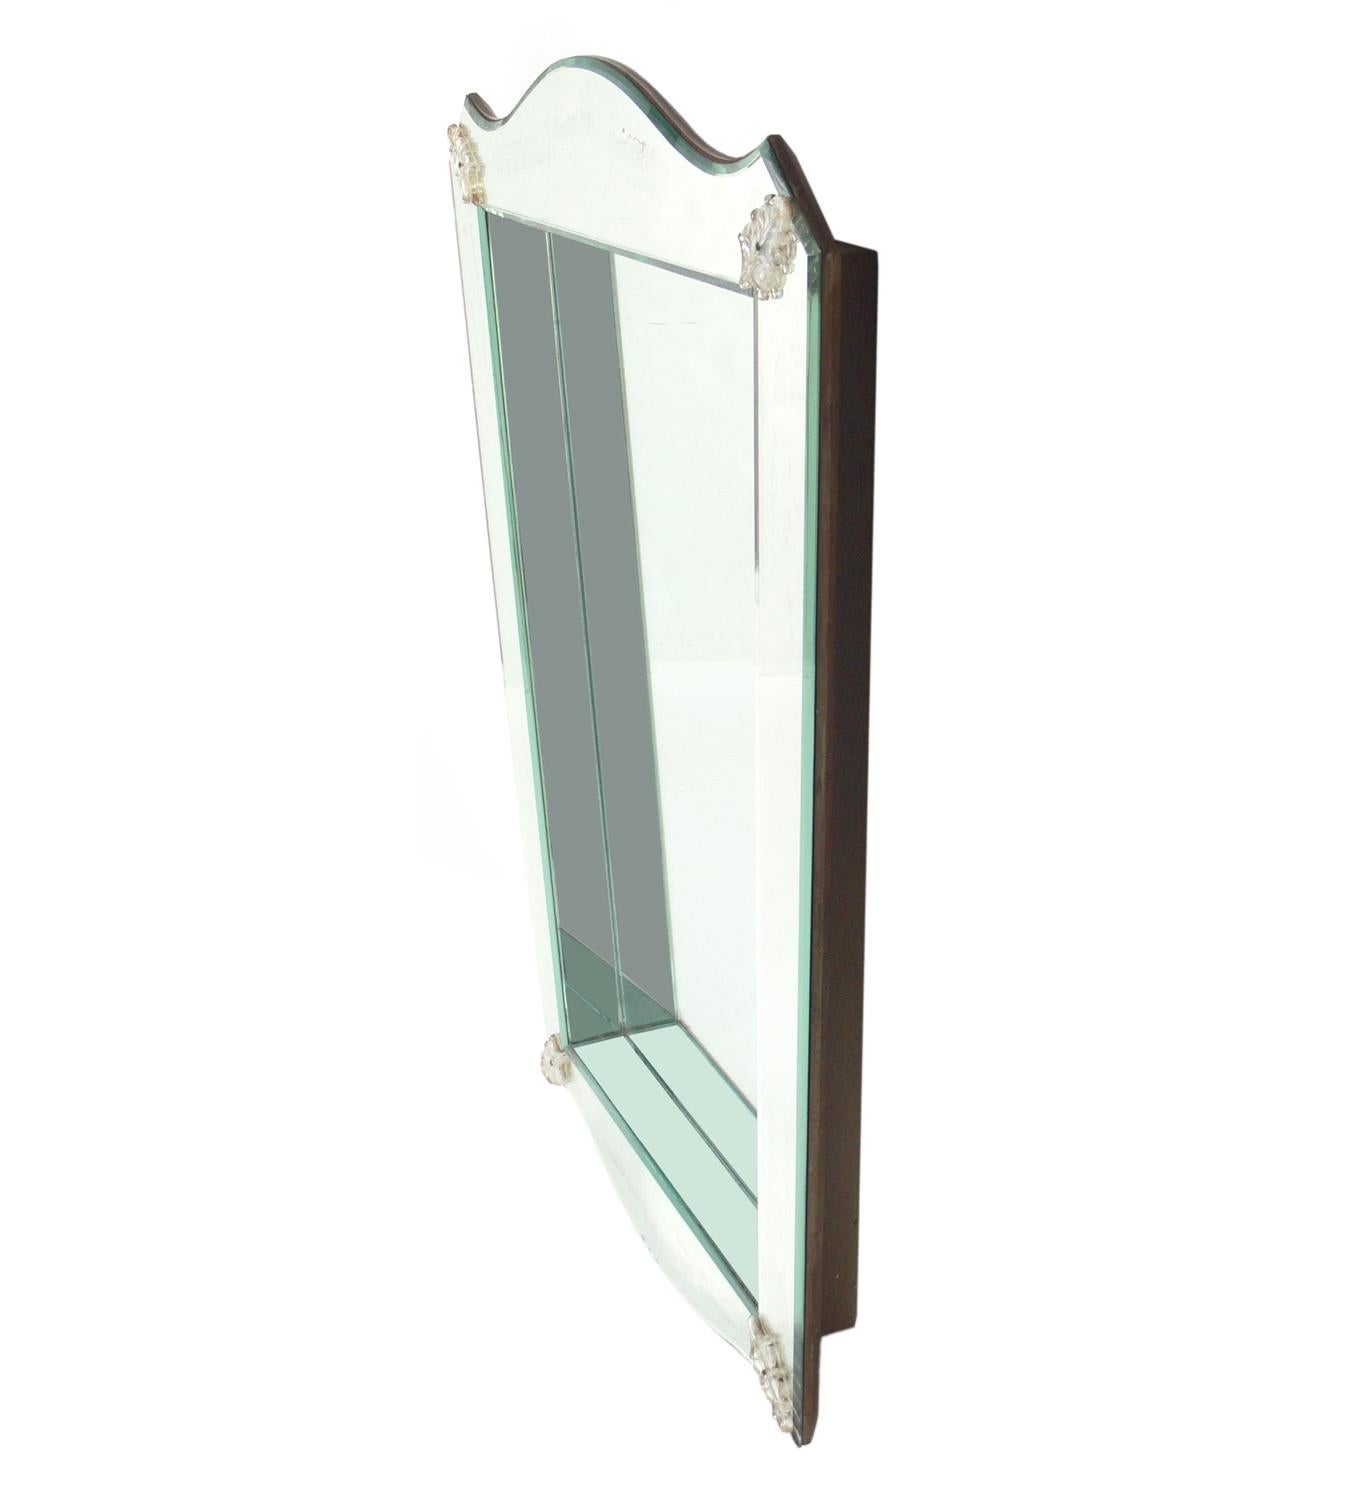 Élégant miroir vénitien en forme de boîte à ombre, Italie, vers les années 1940. Le design glamour comprend une boîte d'ombre encastrée qui permet d'exposer ou simplement d'ajouter une profondeur visuelle. Détails en Lucite dans les coins. Conserve